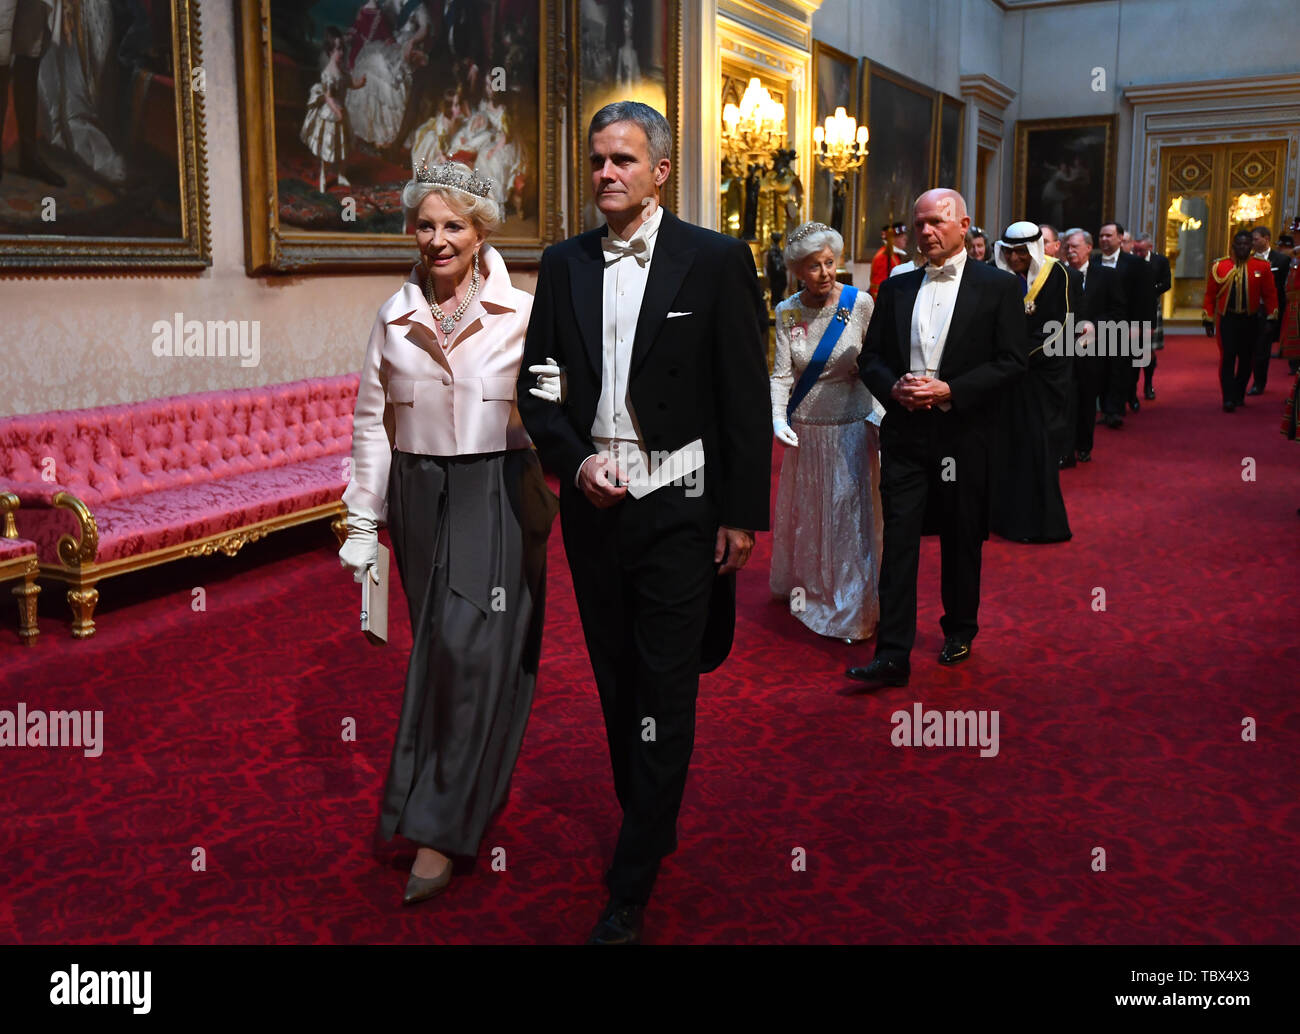 La princesse Michael de Kent et Helge Lund arrivent par la galerie est au cours de la banquet d'État au palais de Buckingham, à Londres, le premier jour de l'US President's trois jour visite d'état du Royaume-Uni. Banque D'Images